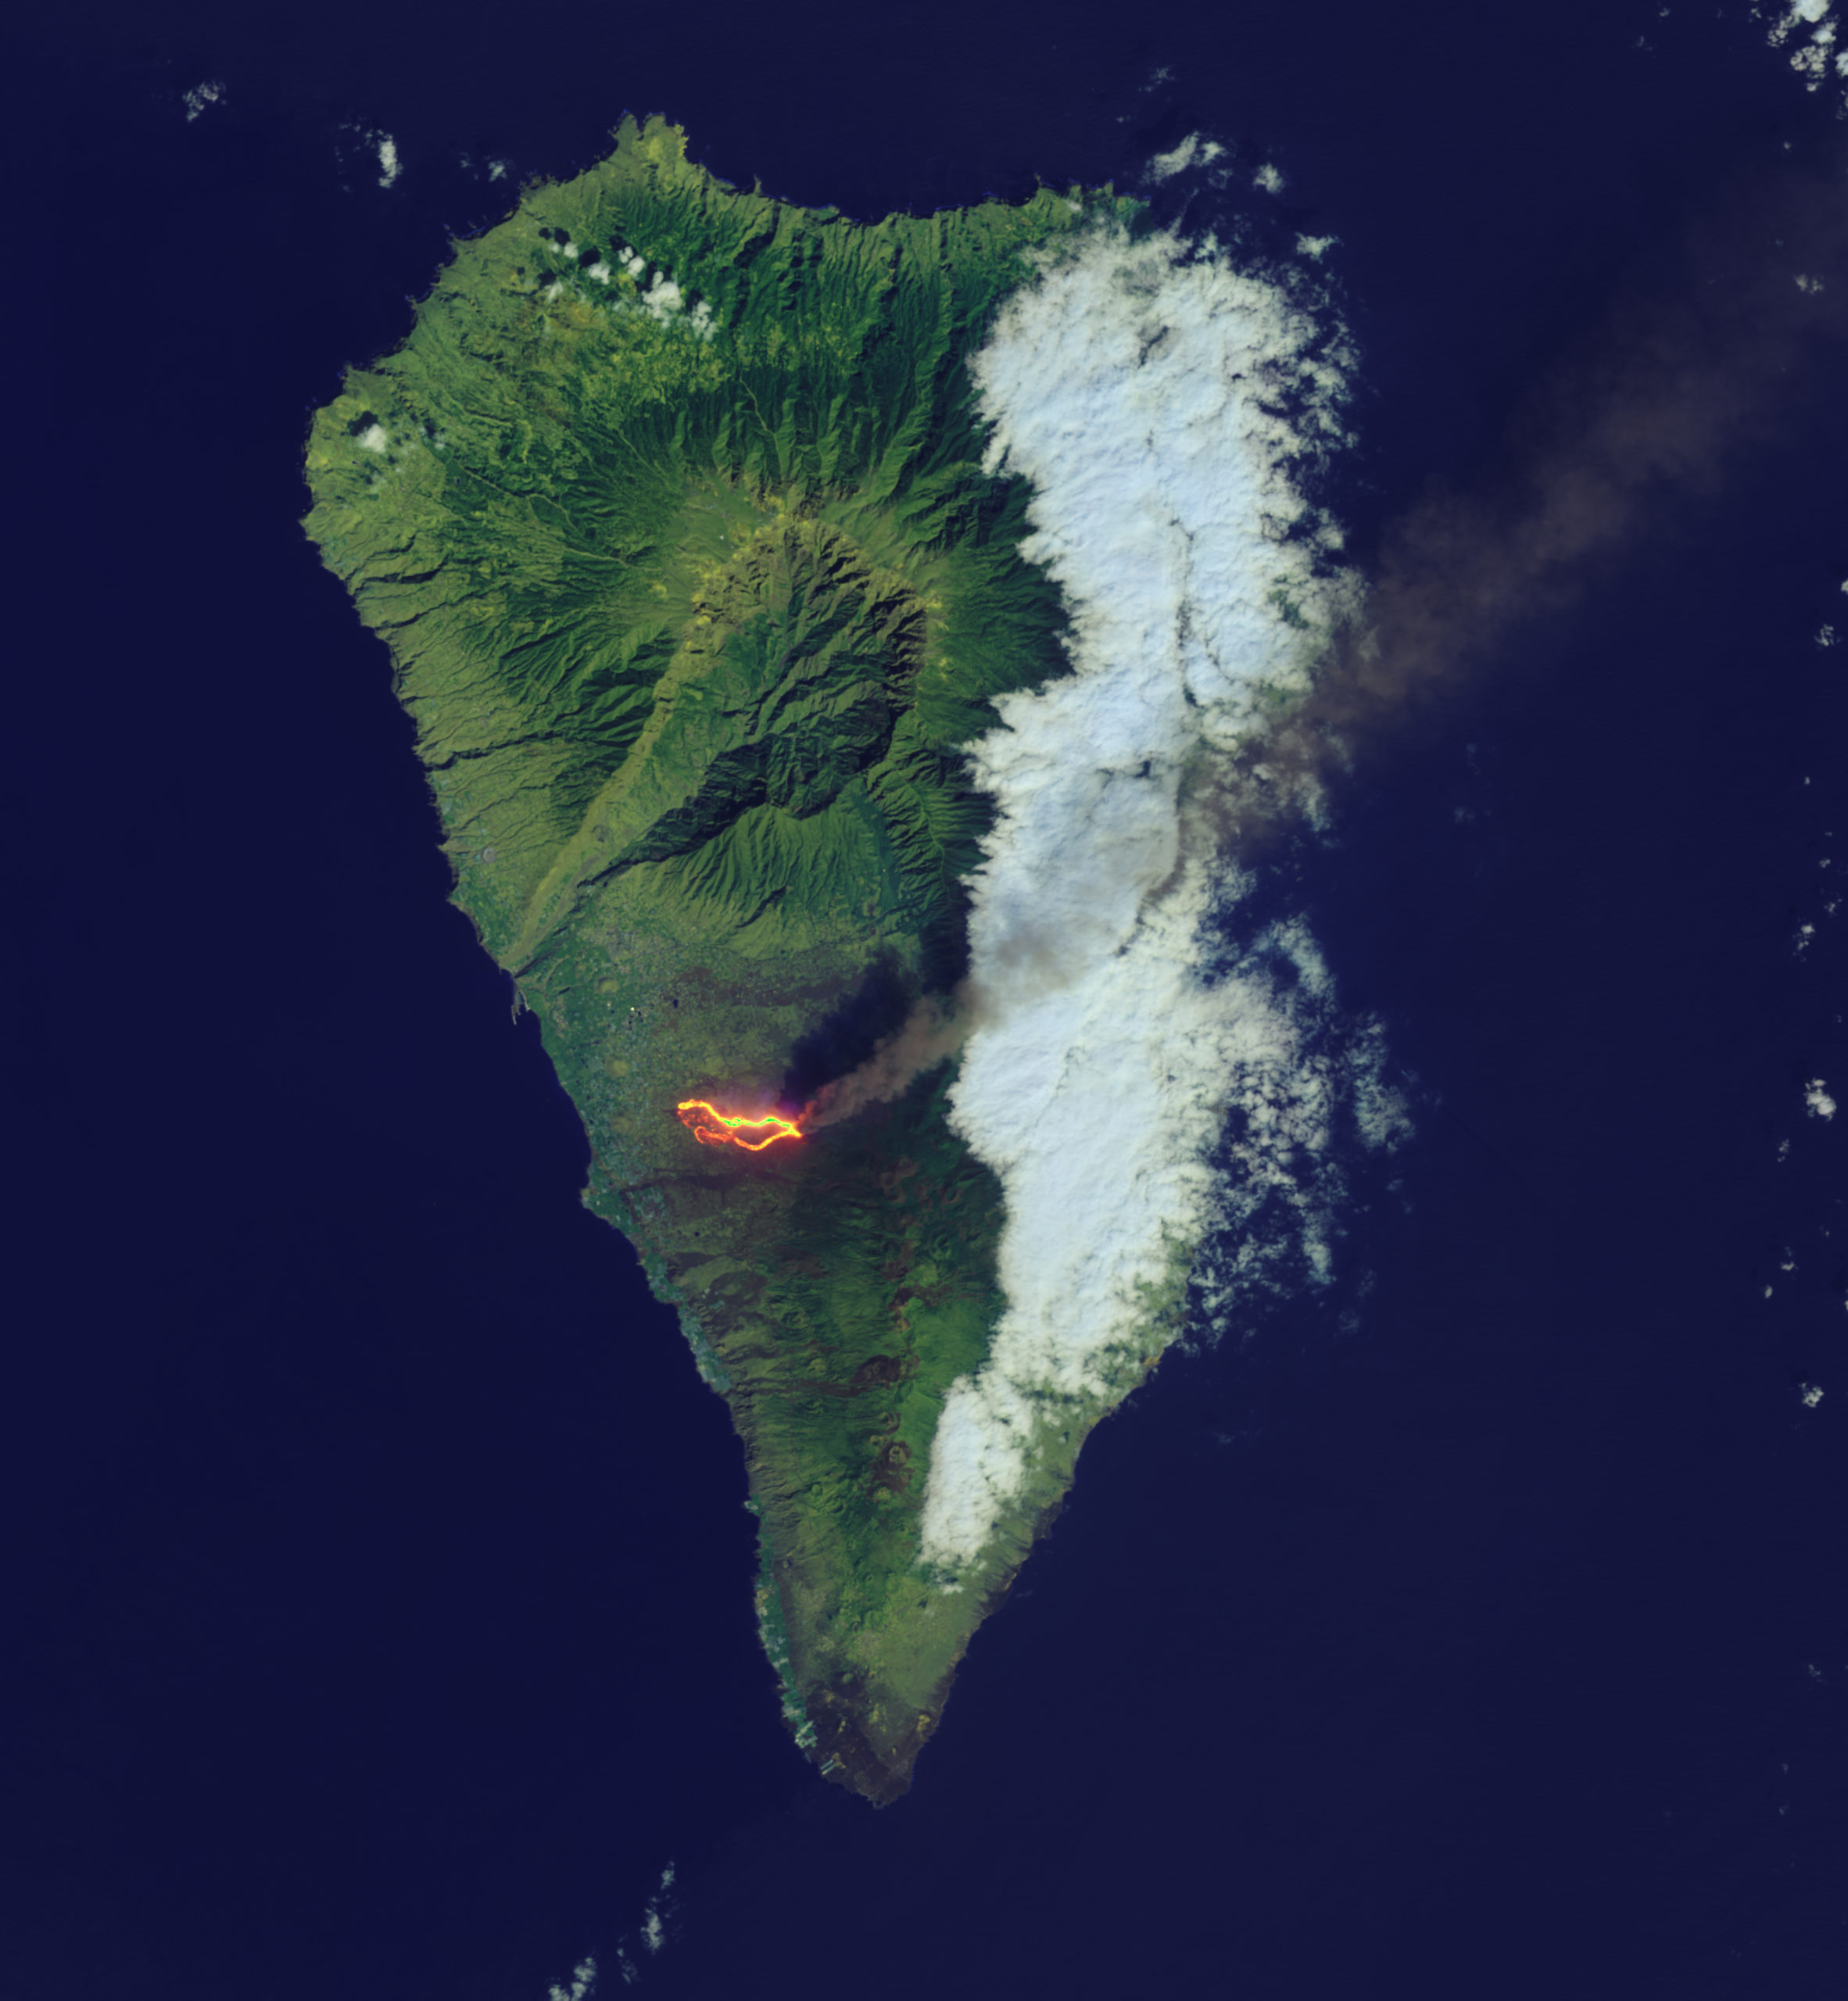 Посмотрите на извержение вулкана из космоса: потоки раскаленной лавы  движутся к океану